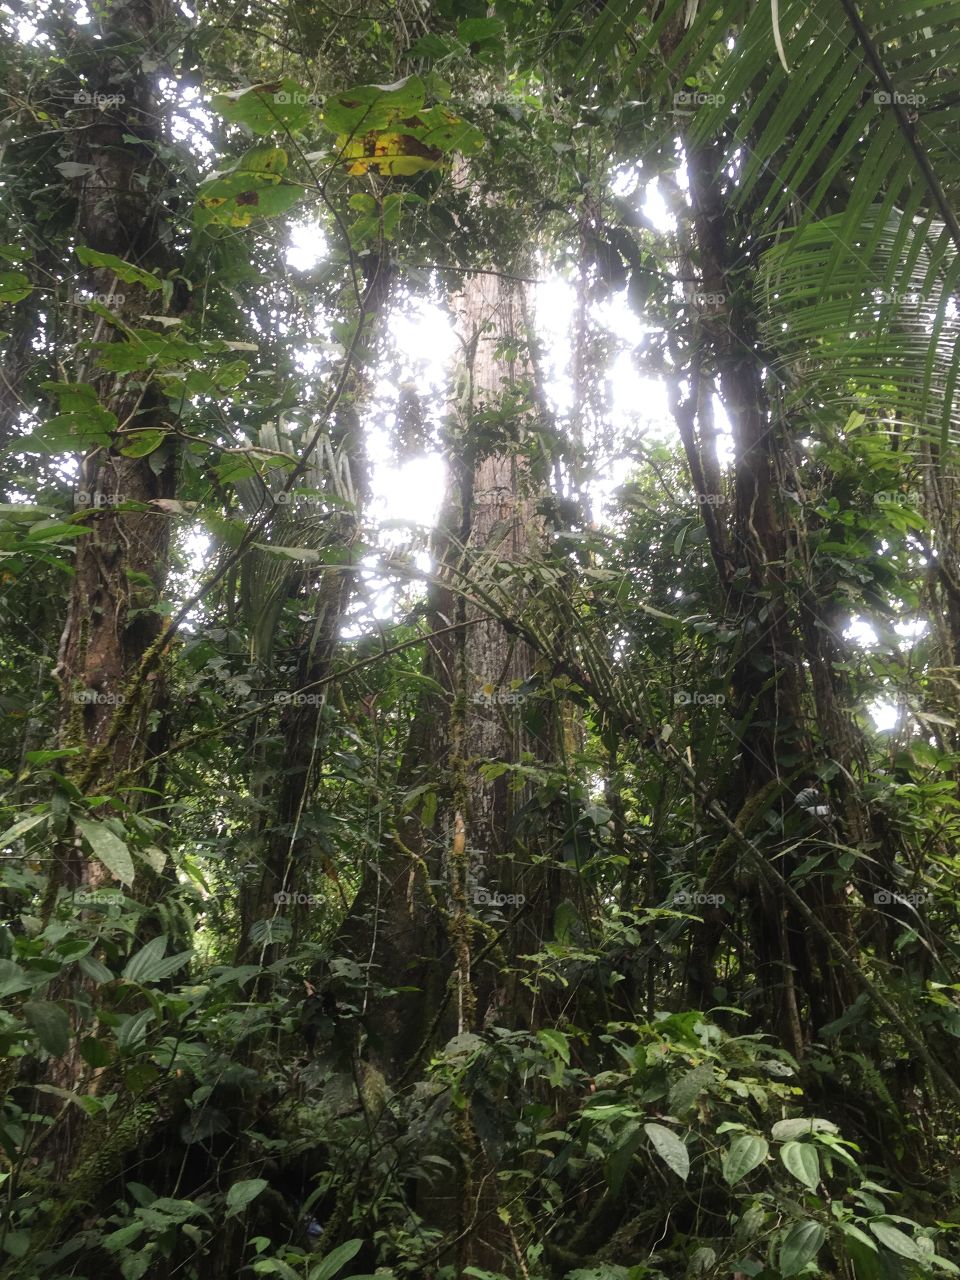 Amazon rainforest trees vines